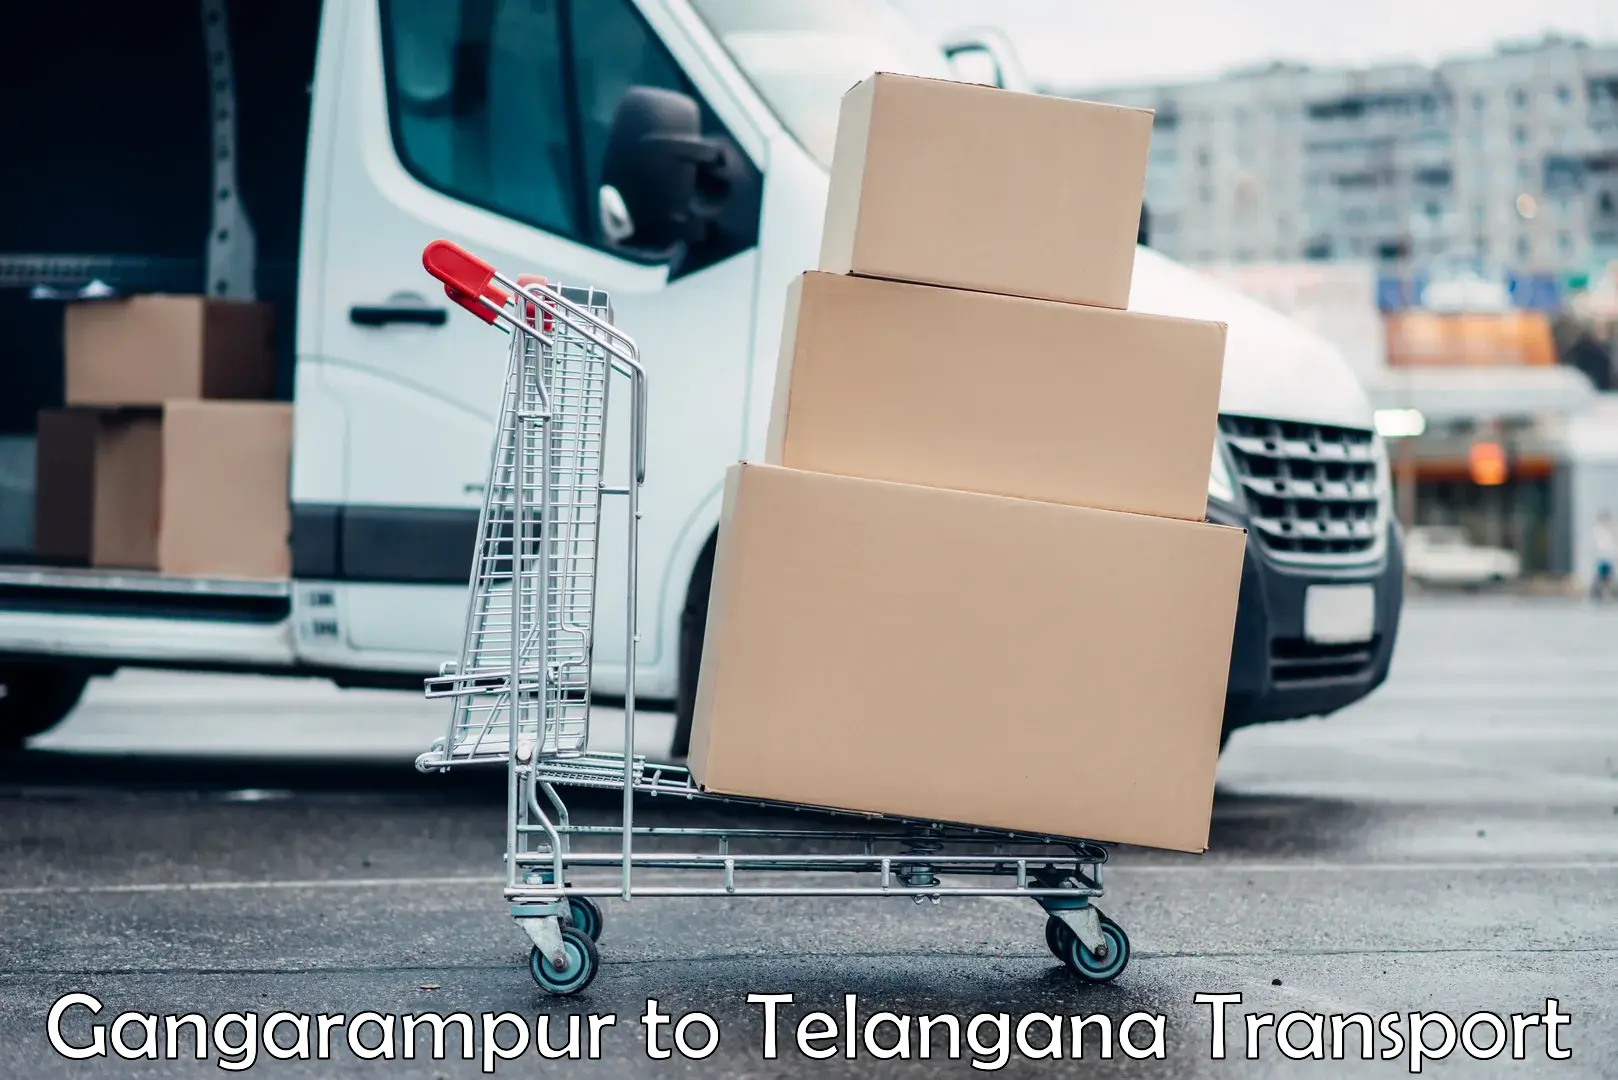 Express transport services Gangarampur to Telangana